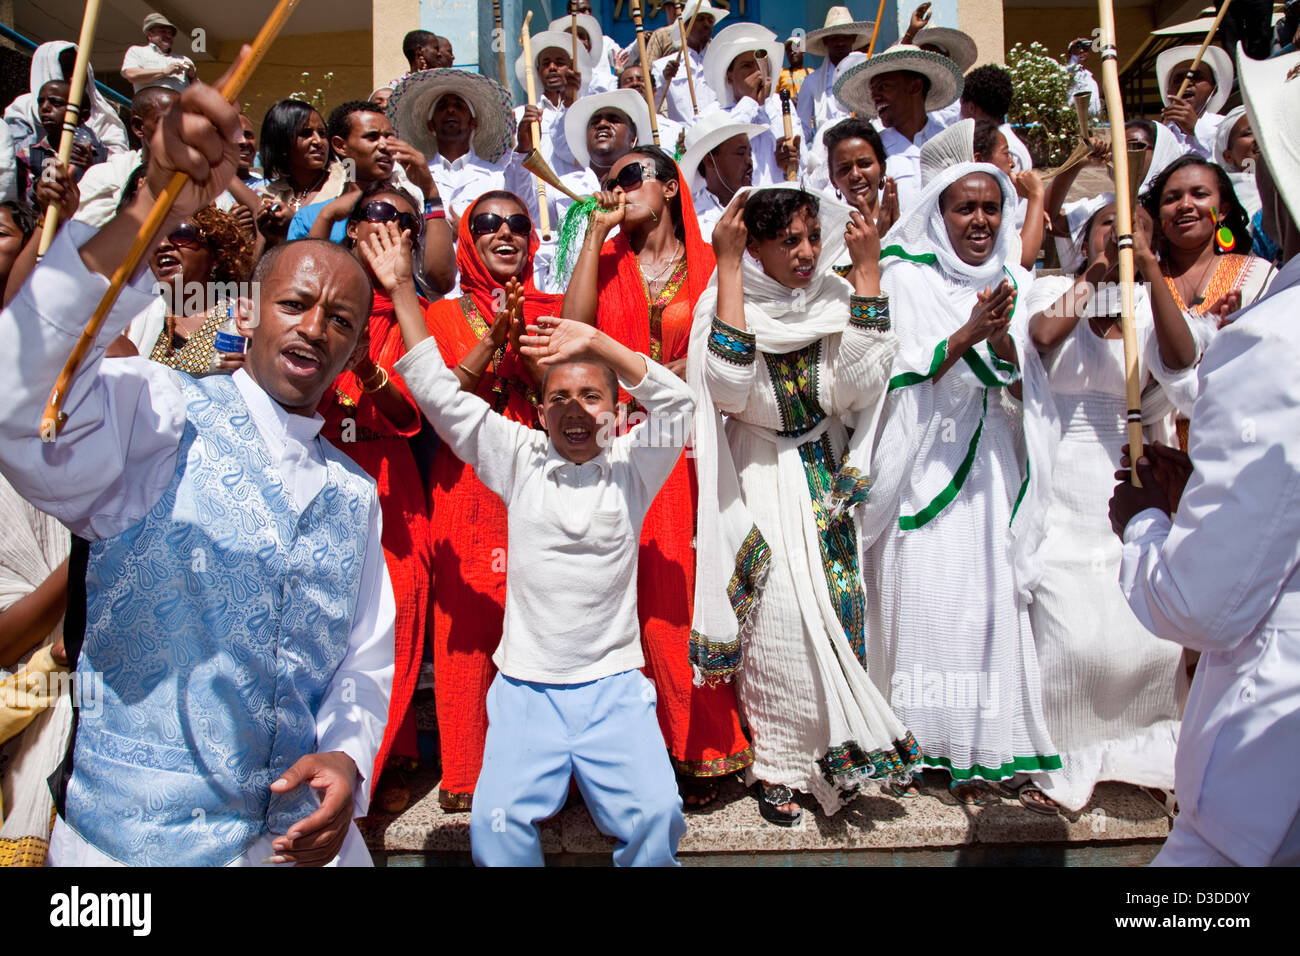 Ethiopian People Celebrating Timkat (The Festival of Epiphany), Gondar, Ethiopia Stock Photo